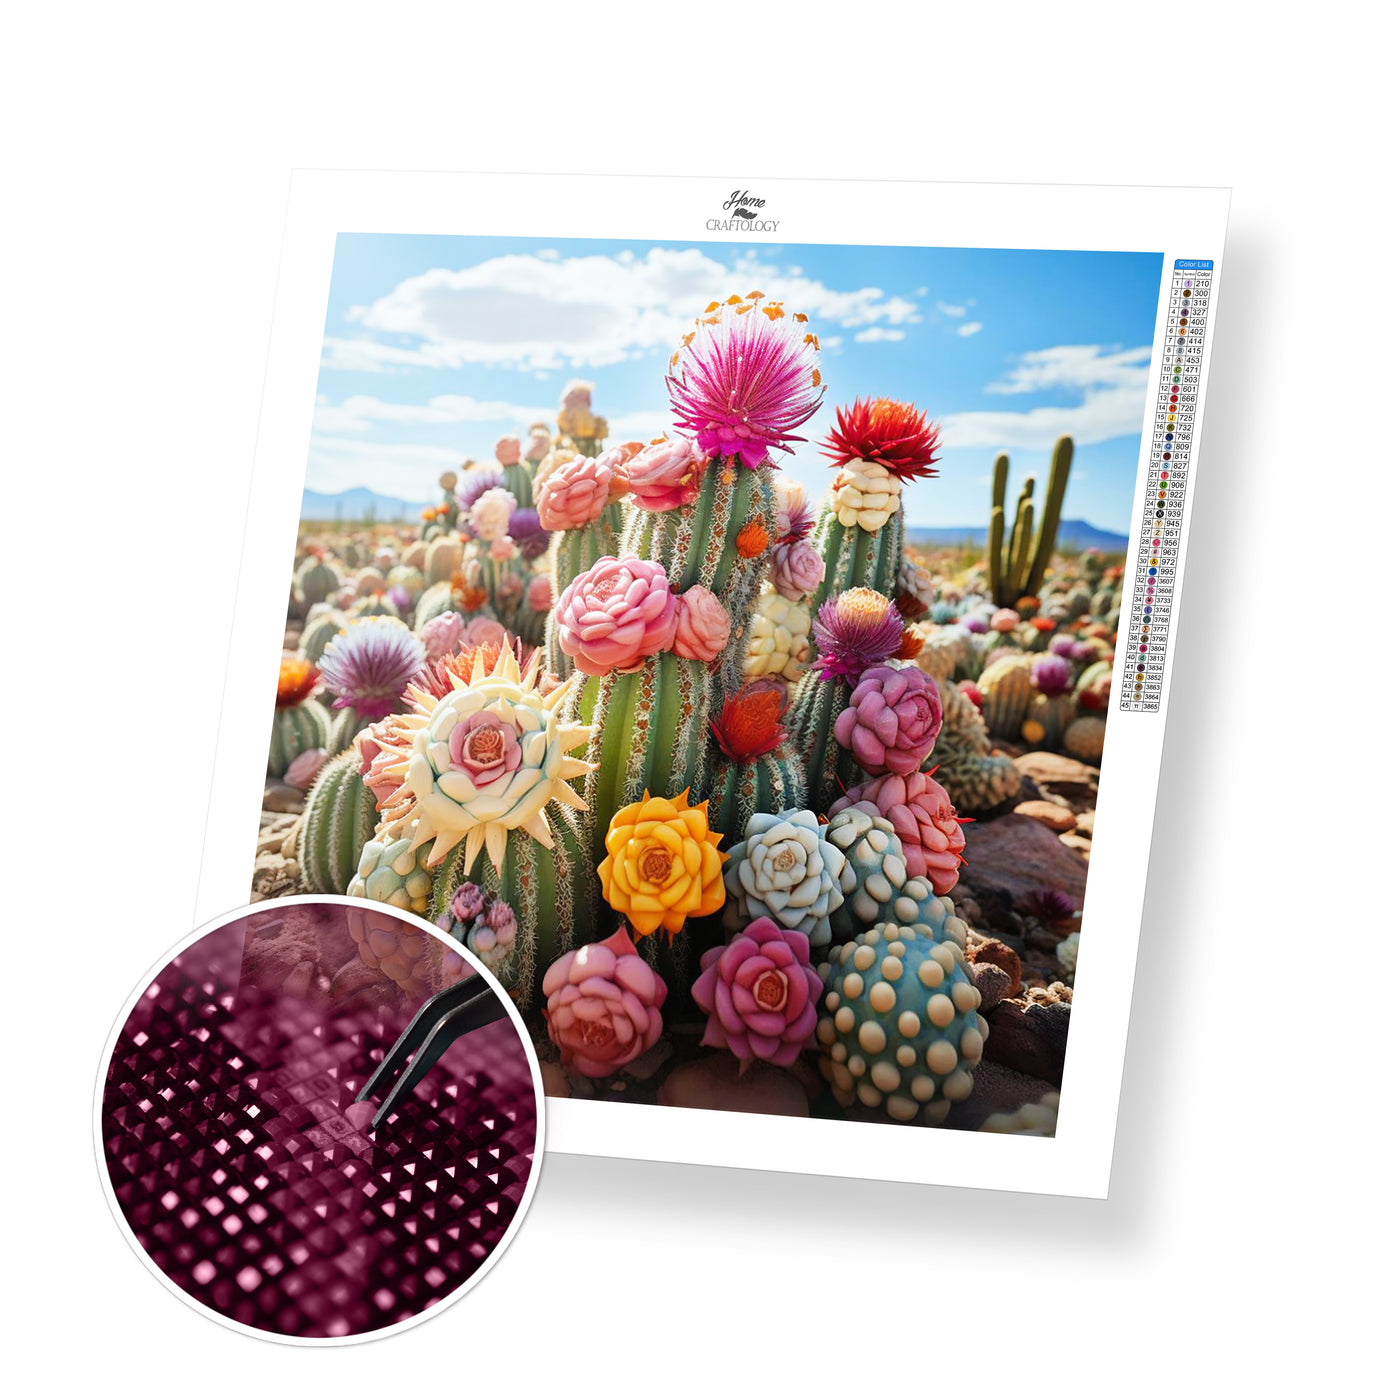 New! Colorful Cactus - Premium Diamond Painting Kit